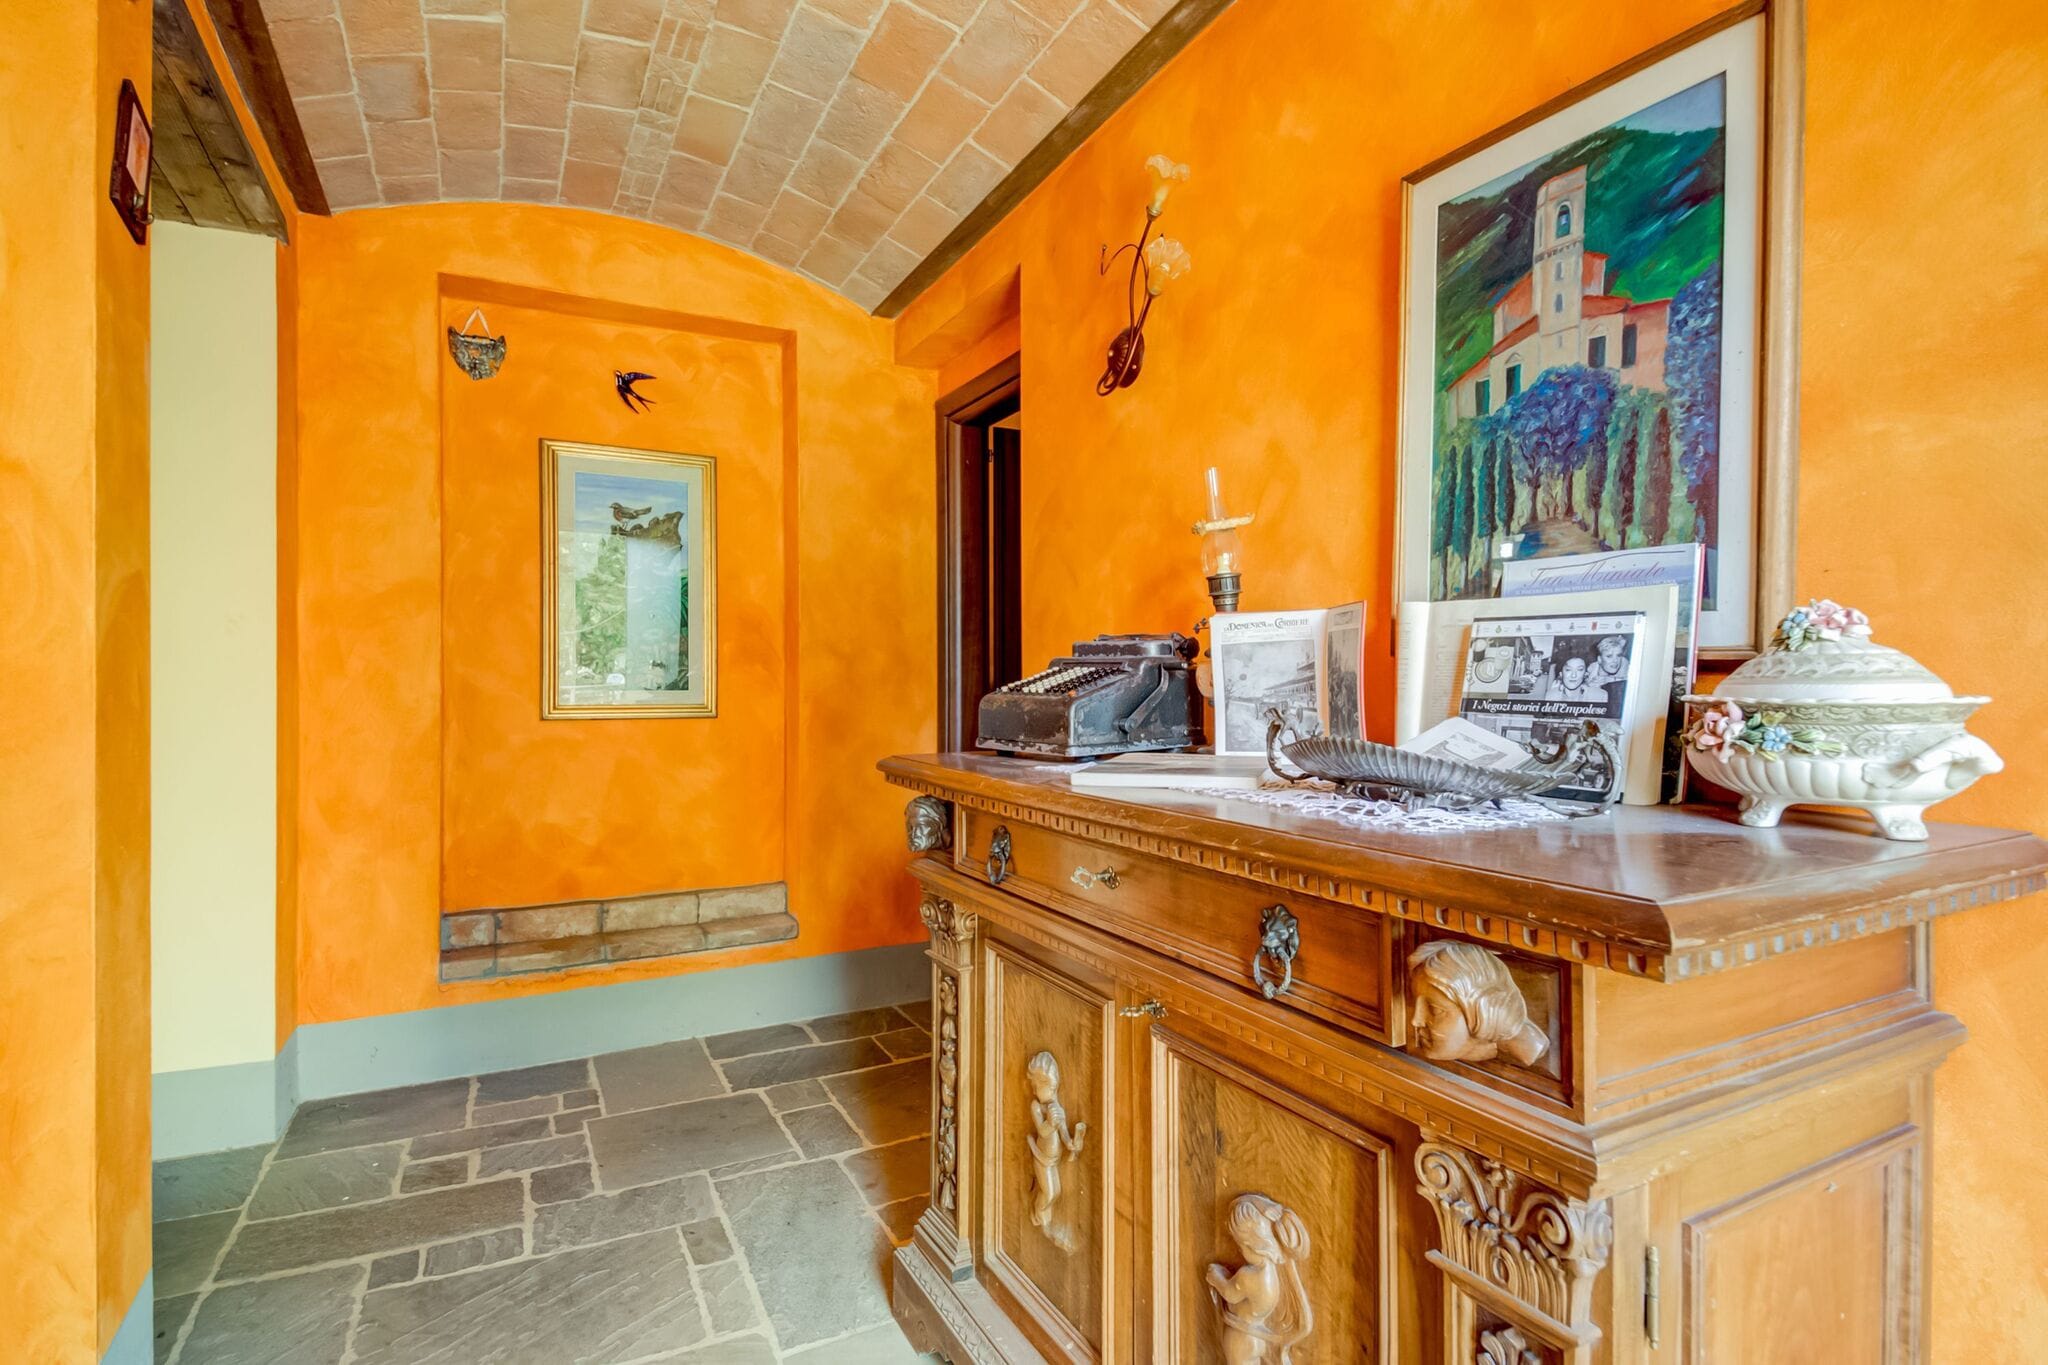 Gemütliches Ferienhaus in der Toskana, Italien mit Hof-Blick